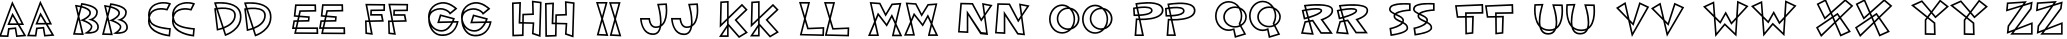 Пример написания английского алфавита шрифтом ShoeString